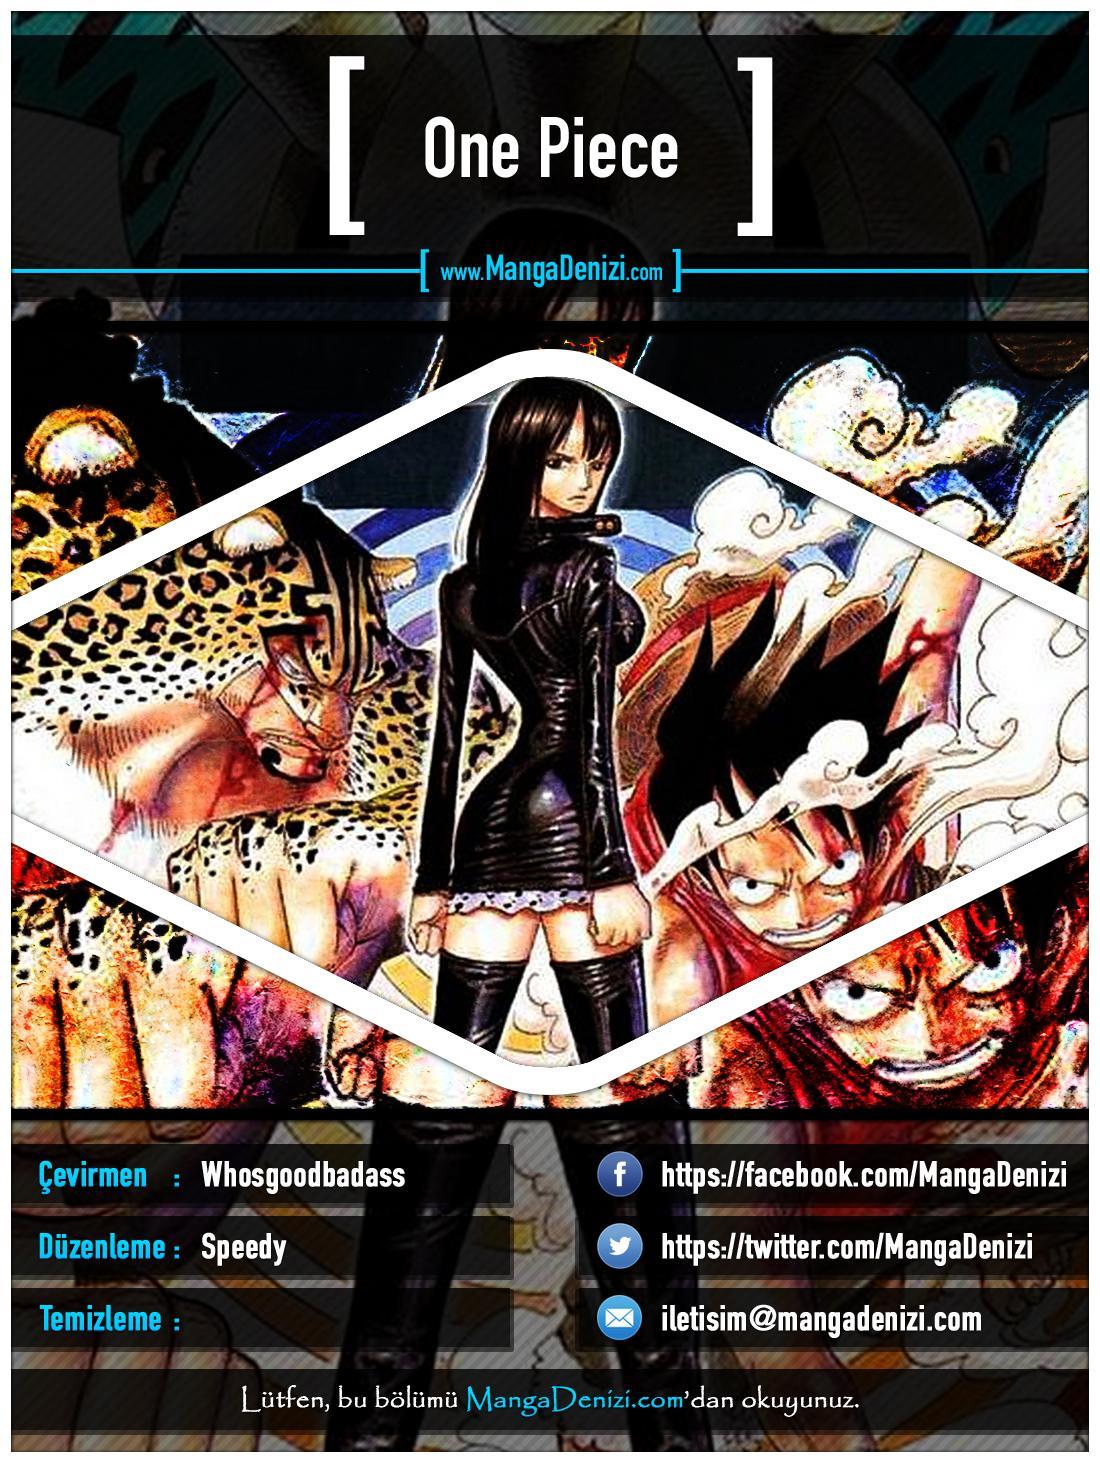 One Piece [Renkli] mangasının 0332 bölümünün 1. sayfasını okuyorsunuz.